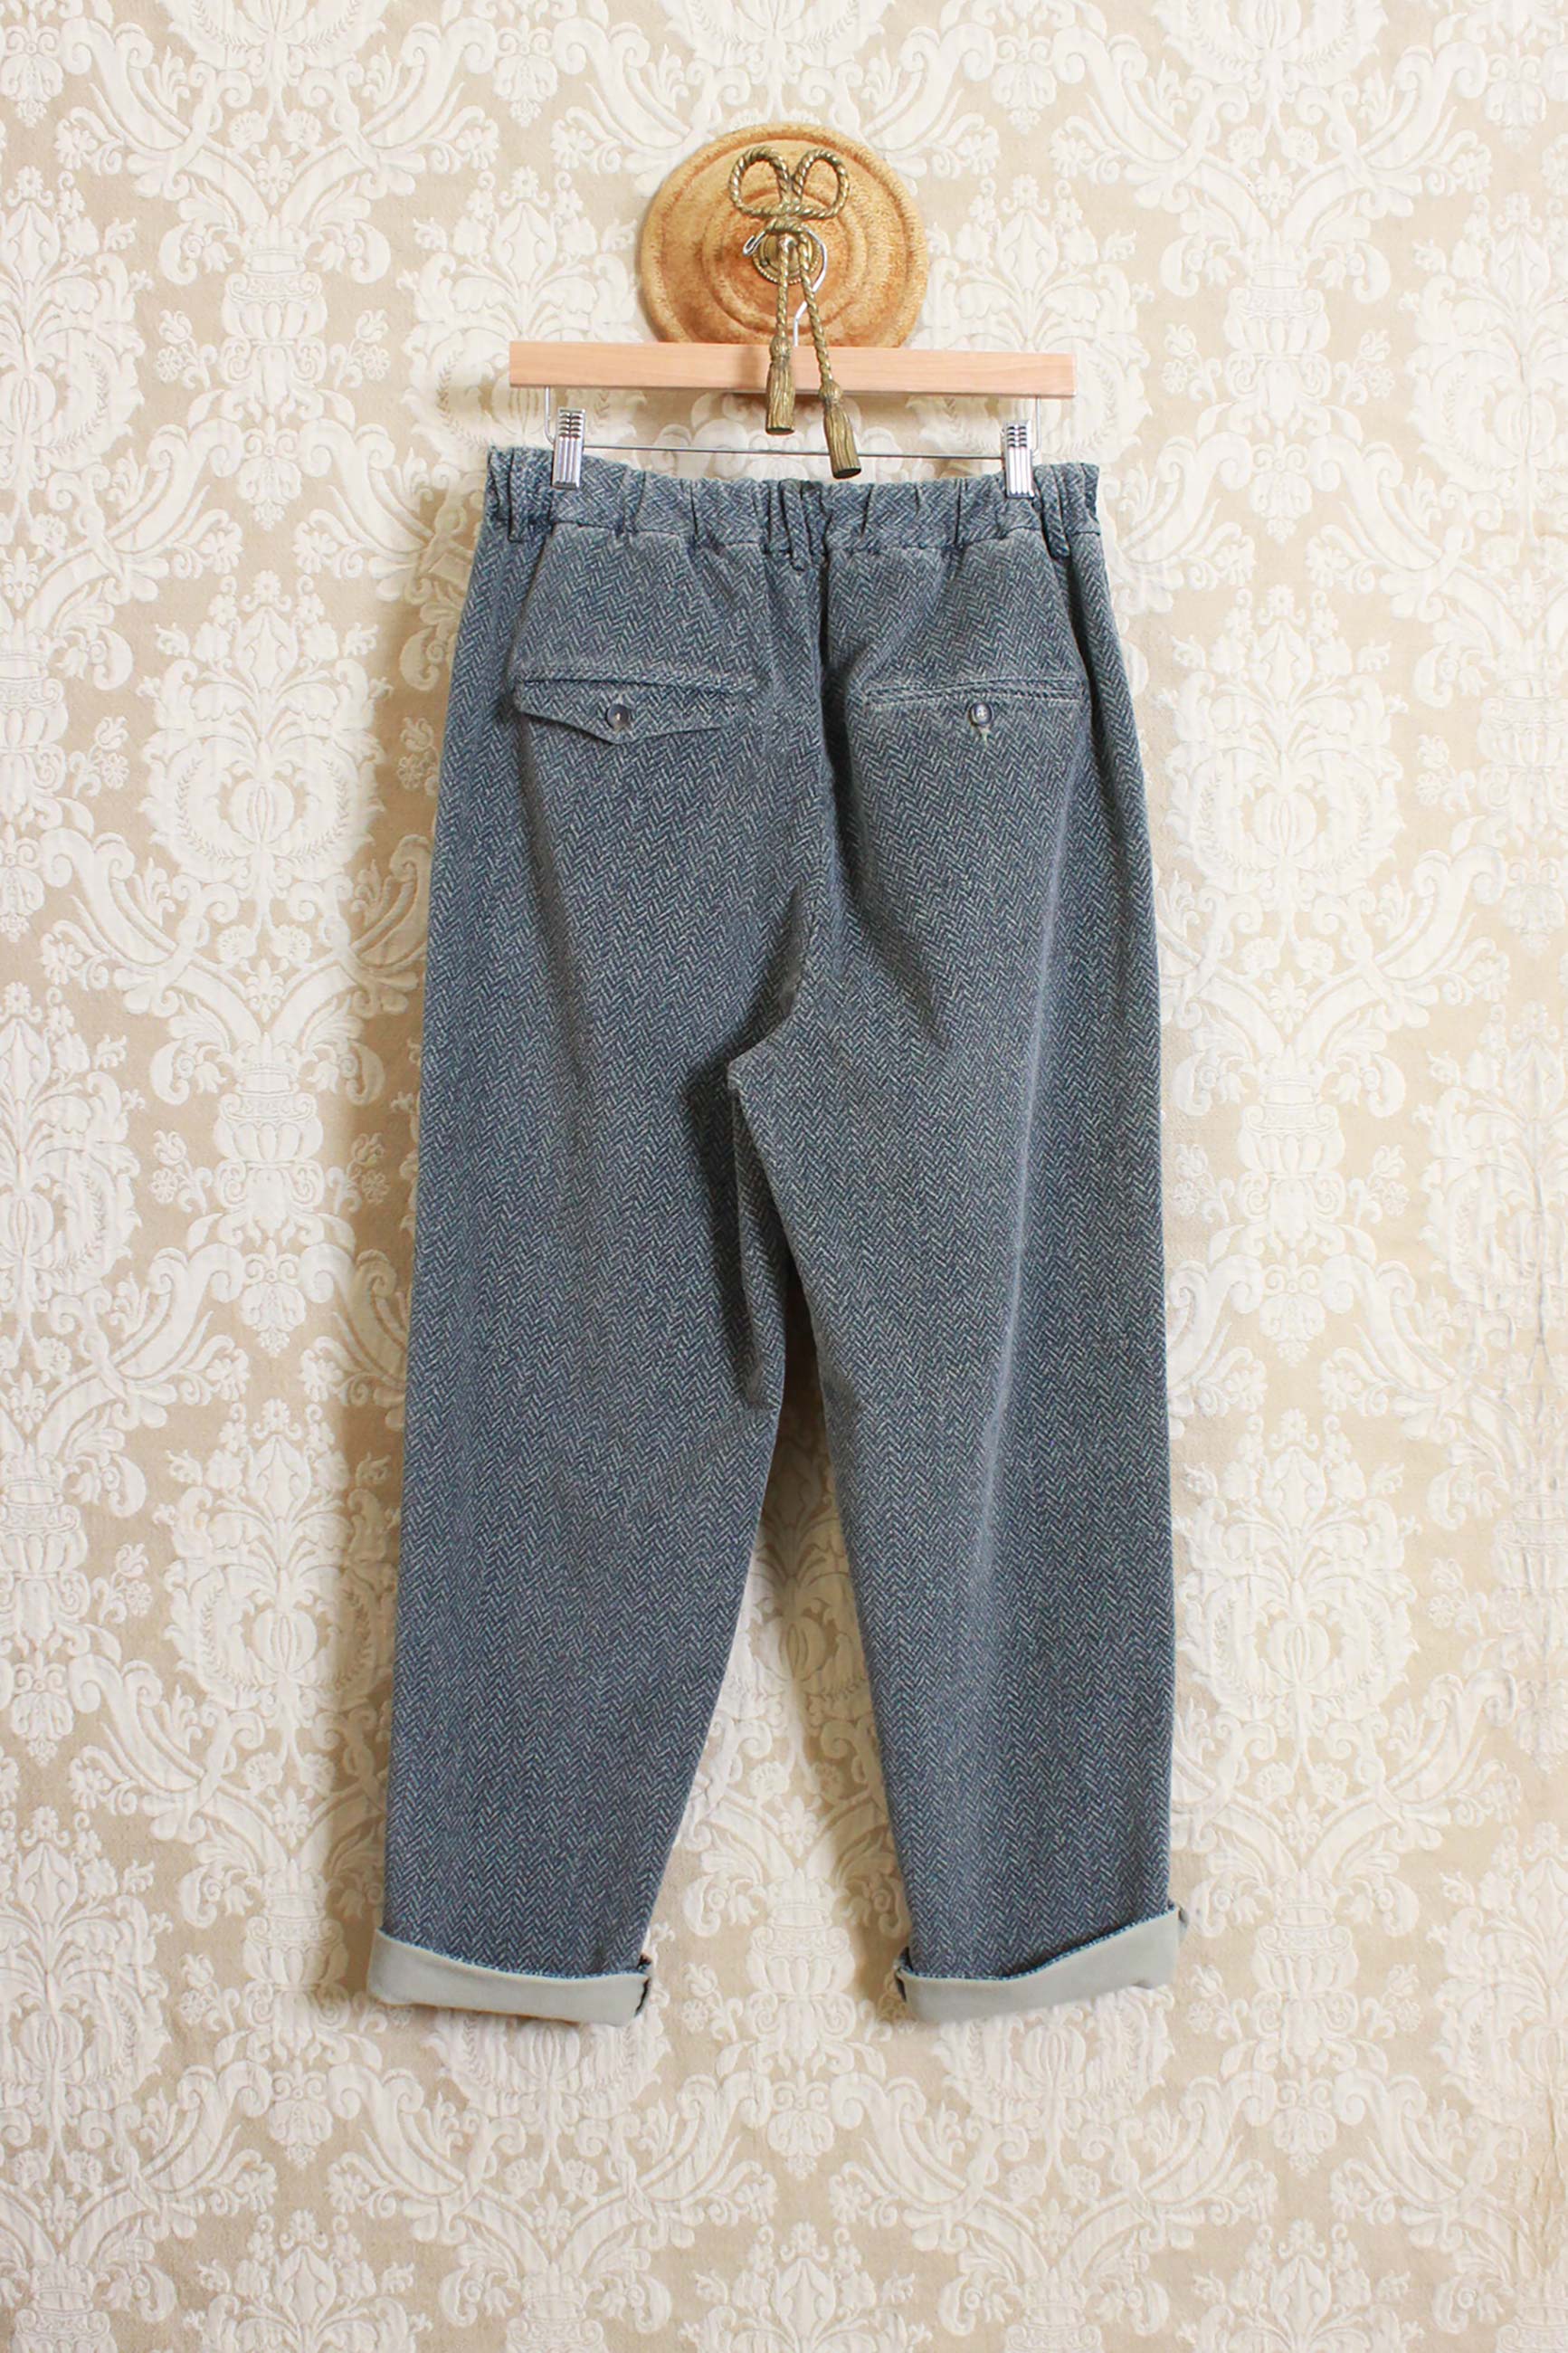 Pantalone Original Vintage Style in velluto herringbone color stone collezione uomo fw23